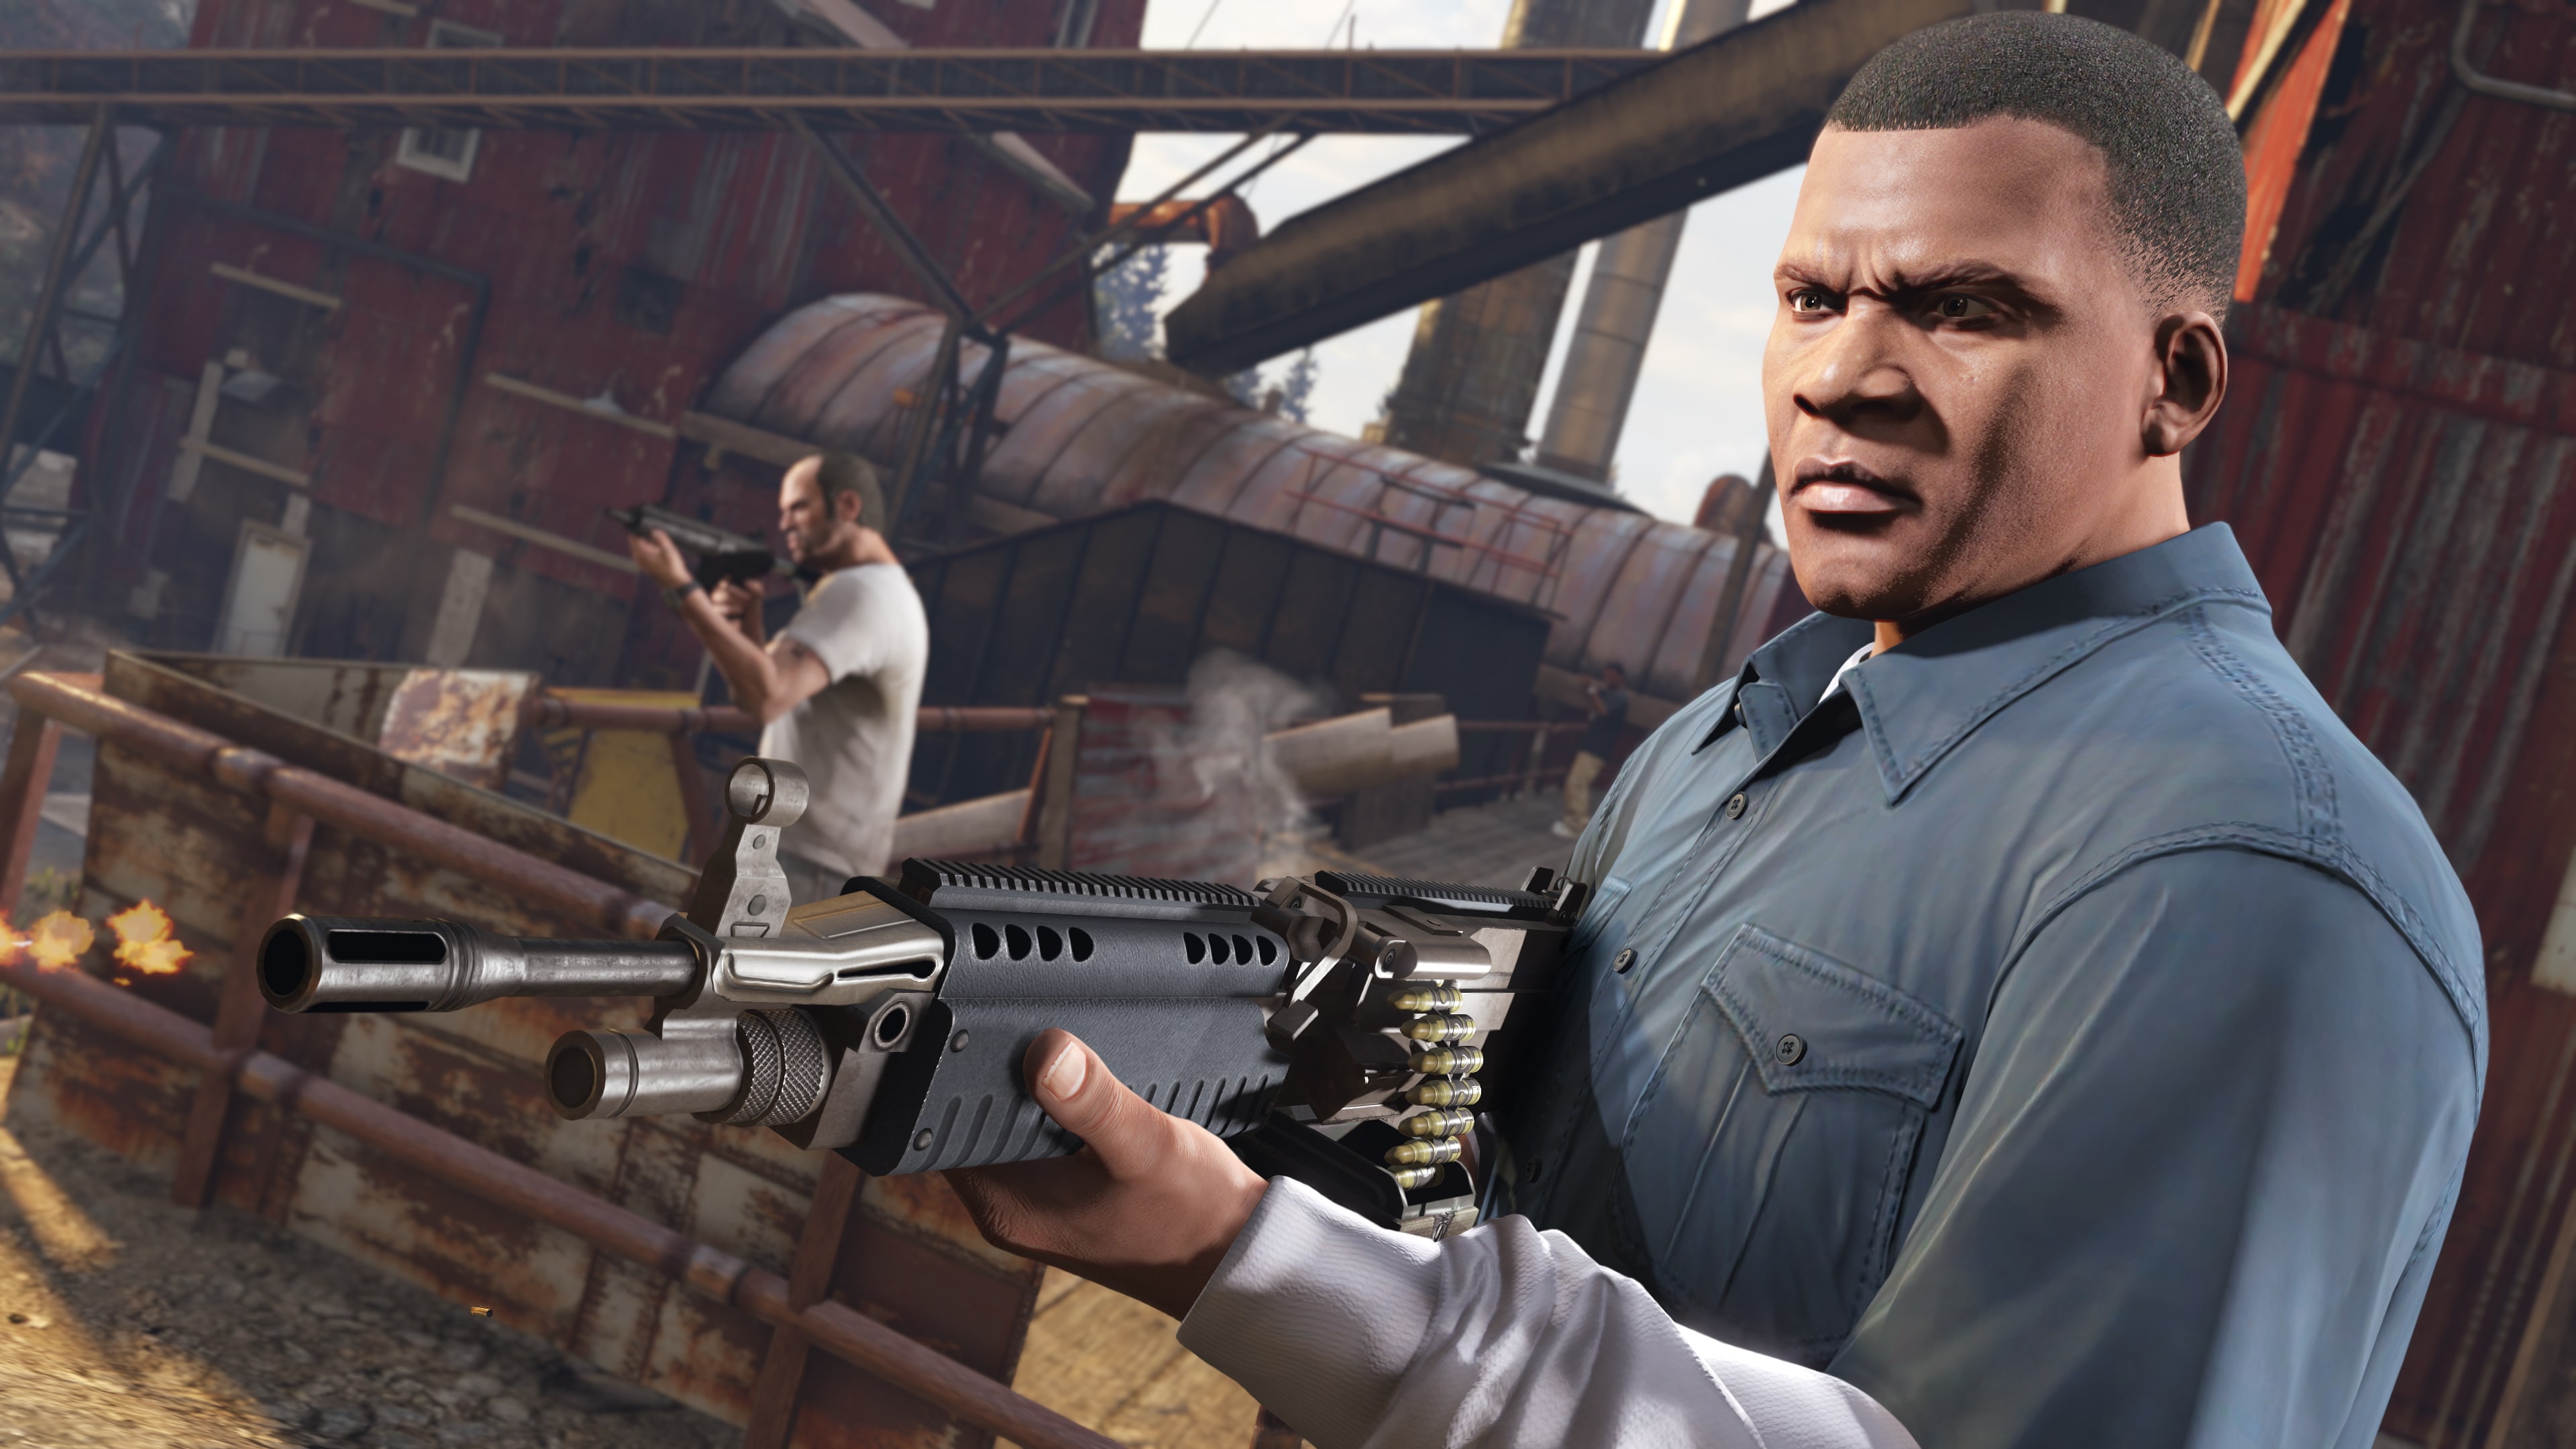 Grand Theft Auto V (PS4™ & PS5™)